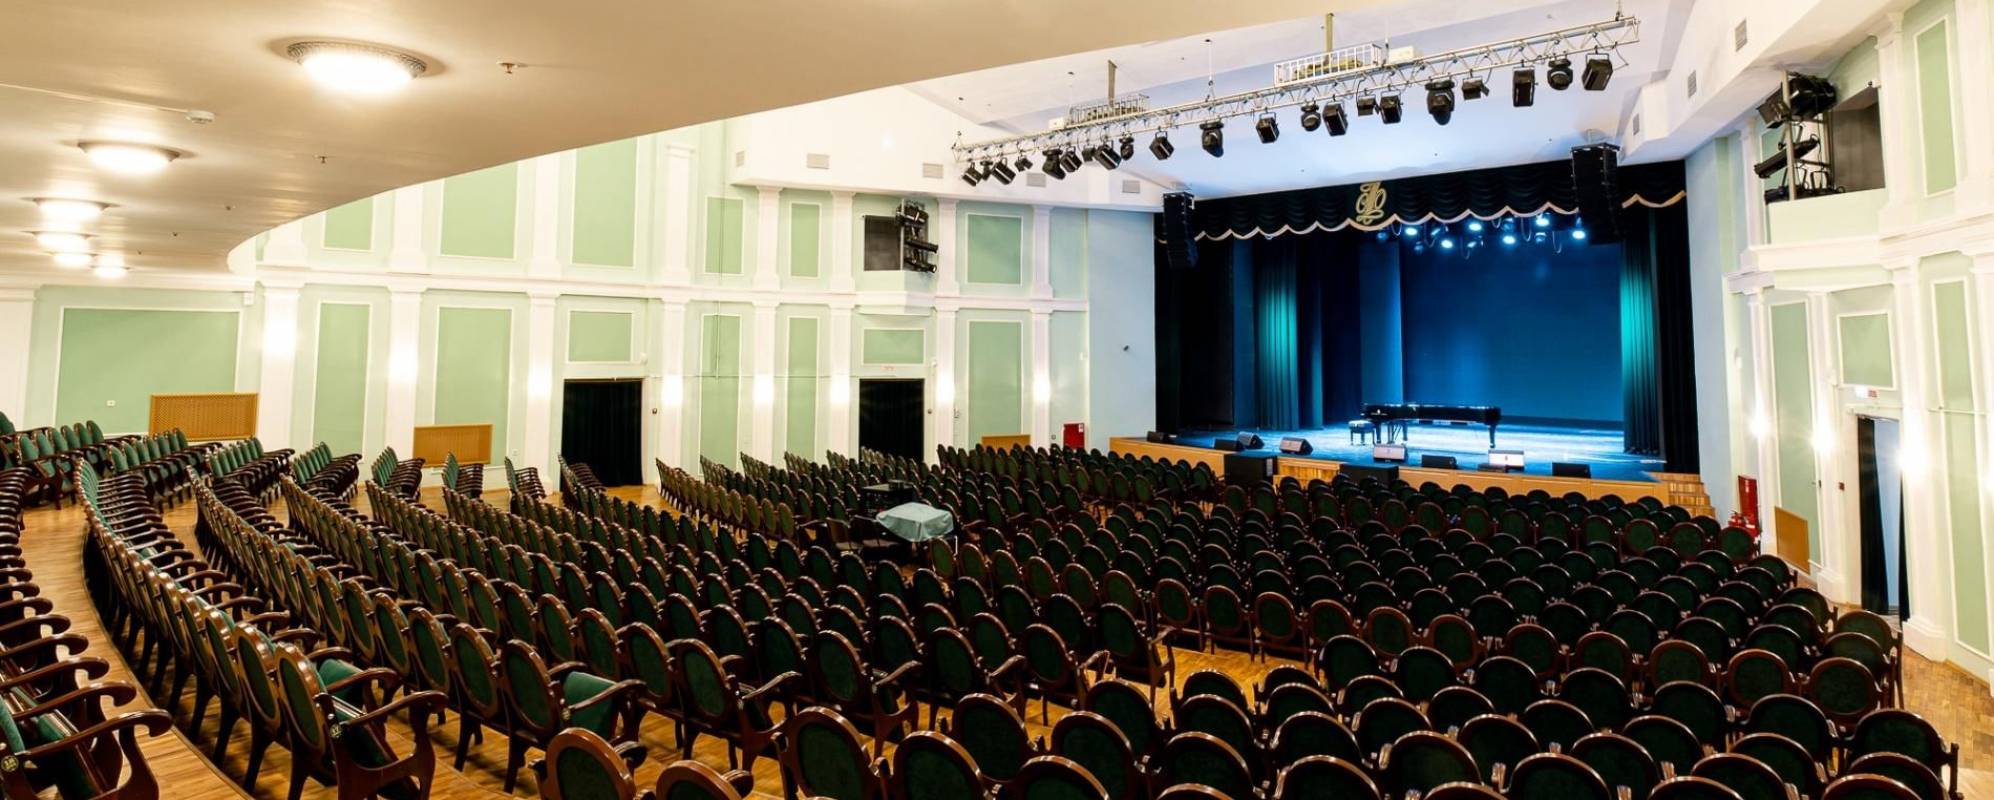 Фотографии концертного зала Большая сцена Концертного зала Свиридовский